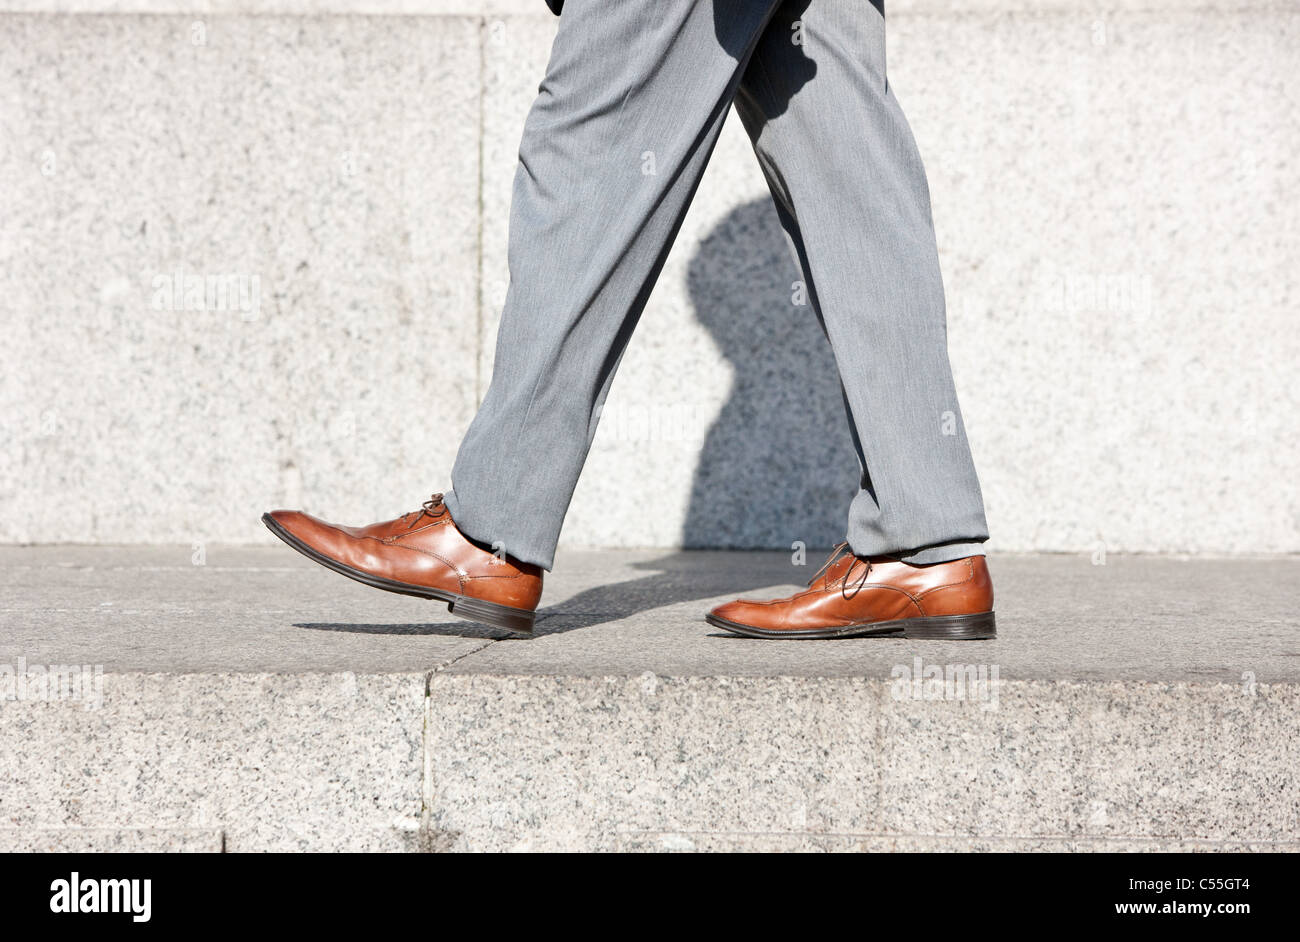 Les jambes de l'homme avec chaussures brunes en faisant un pas en avant Banque D'Images